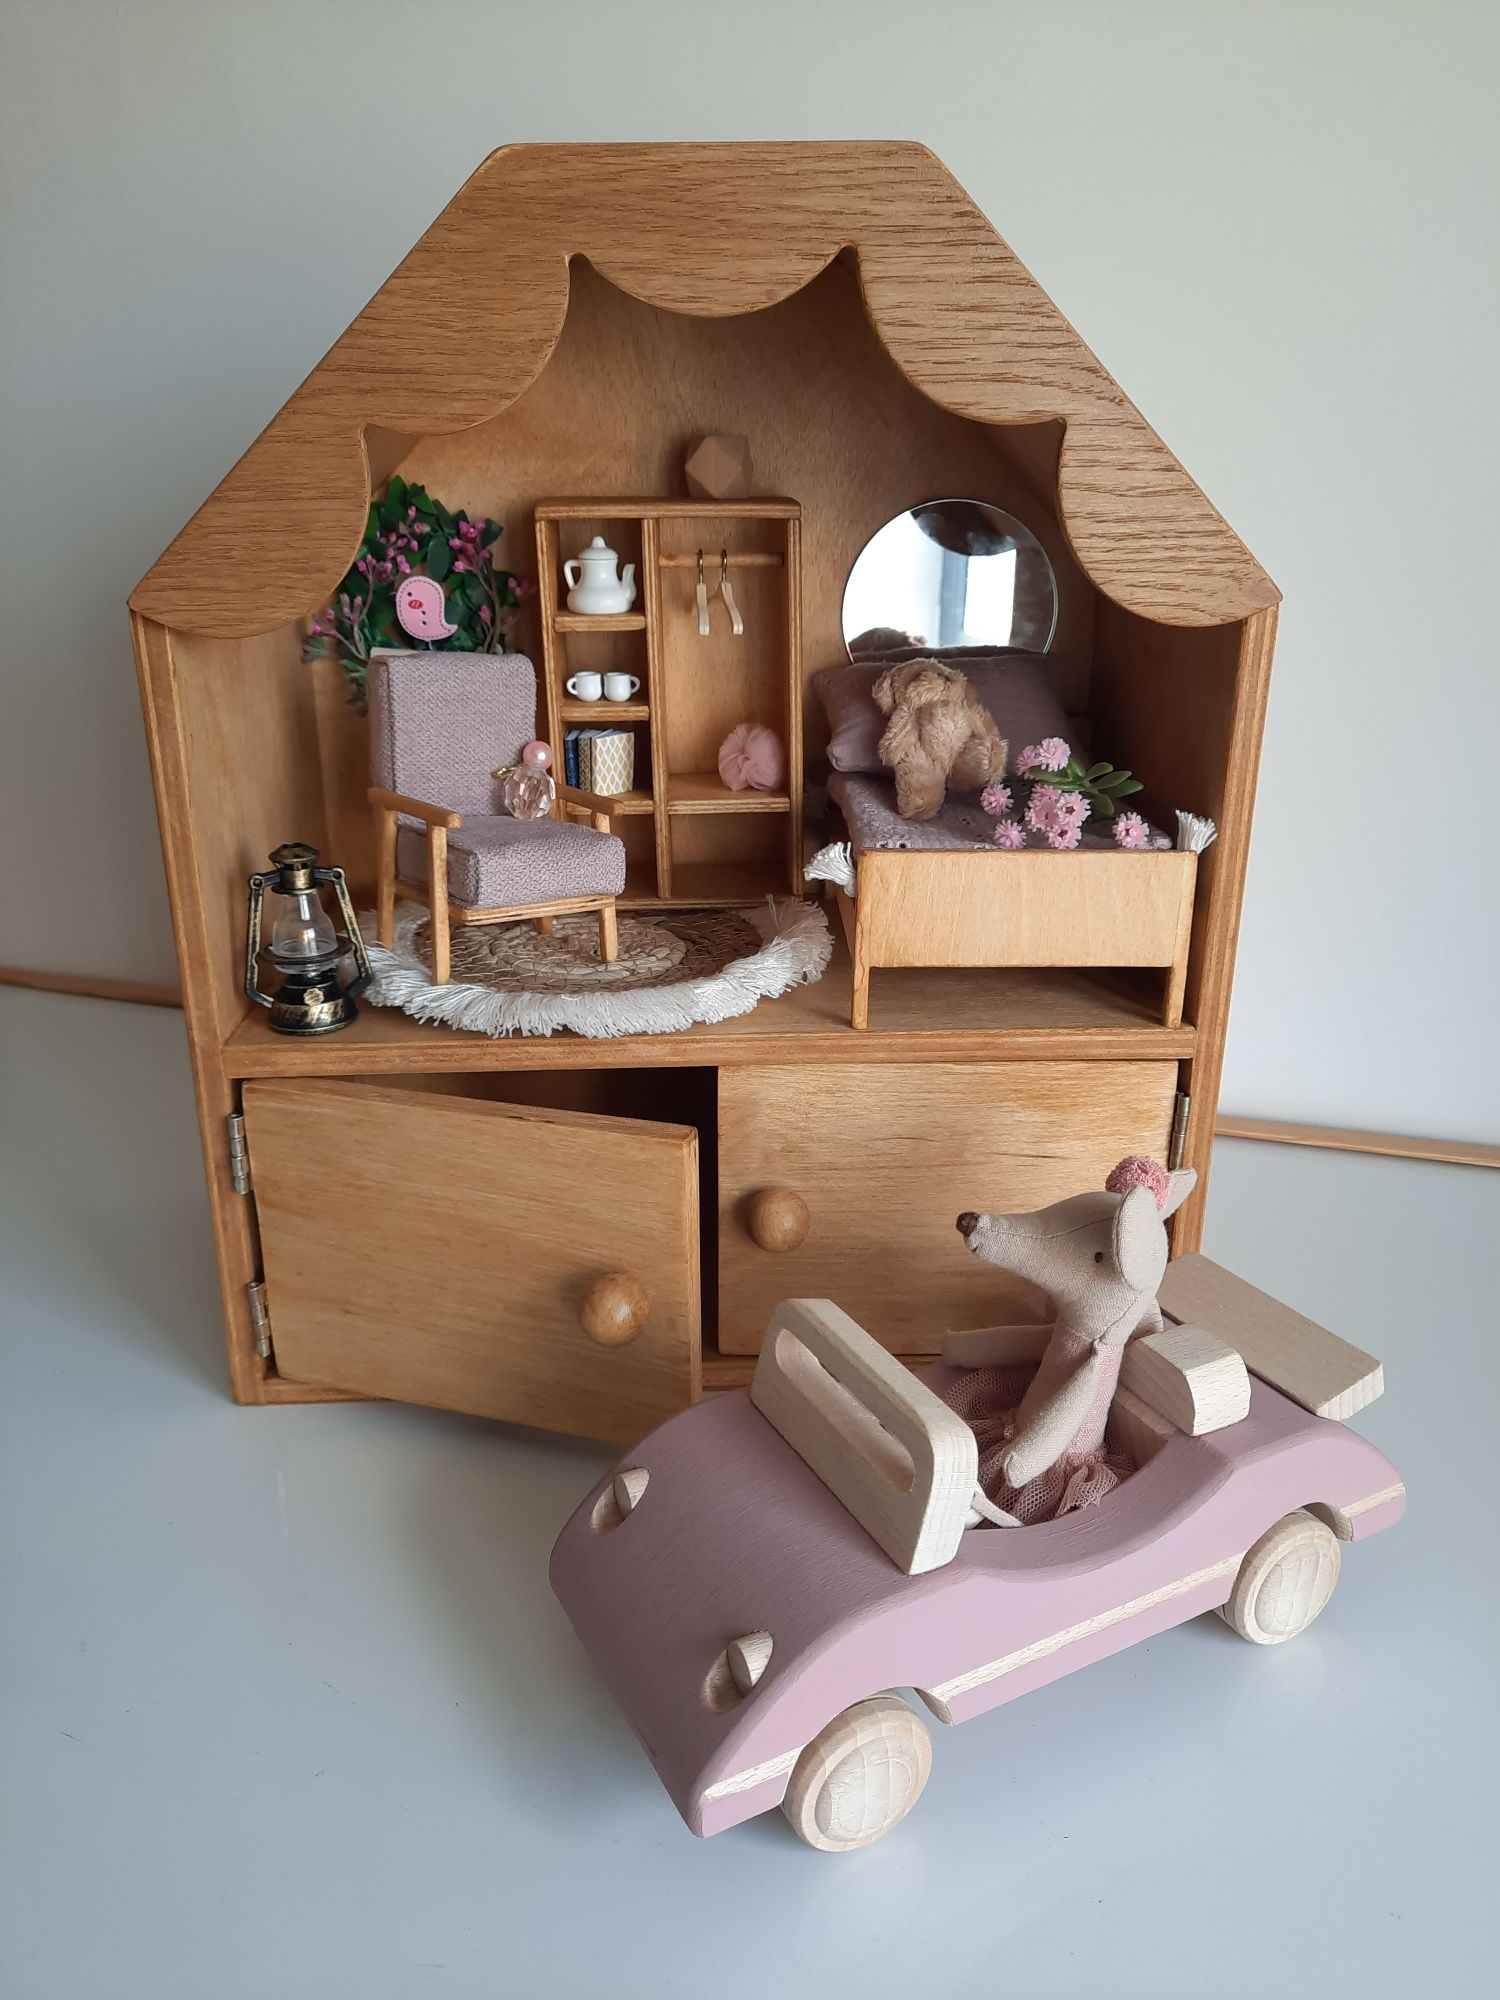 Drewniany domek z autkiem dla lalek/ myszek